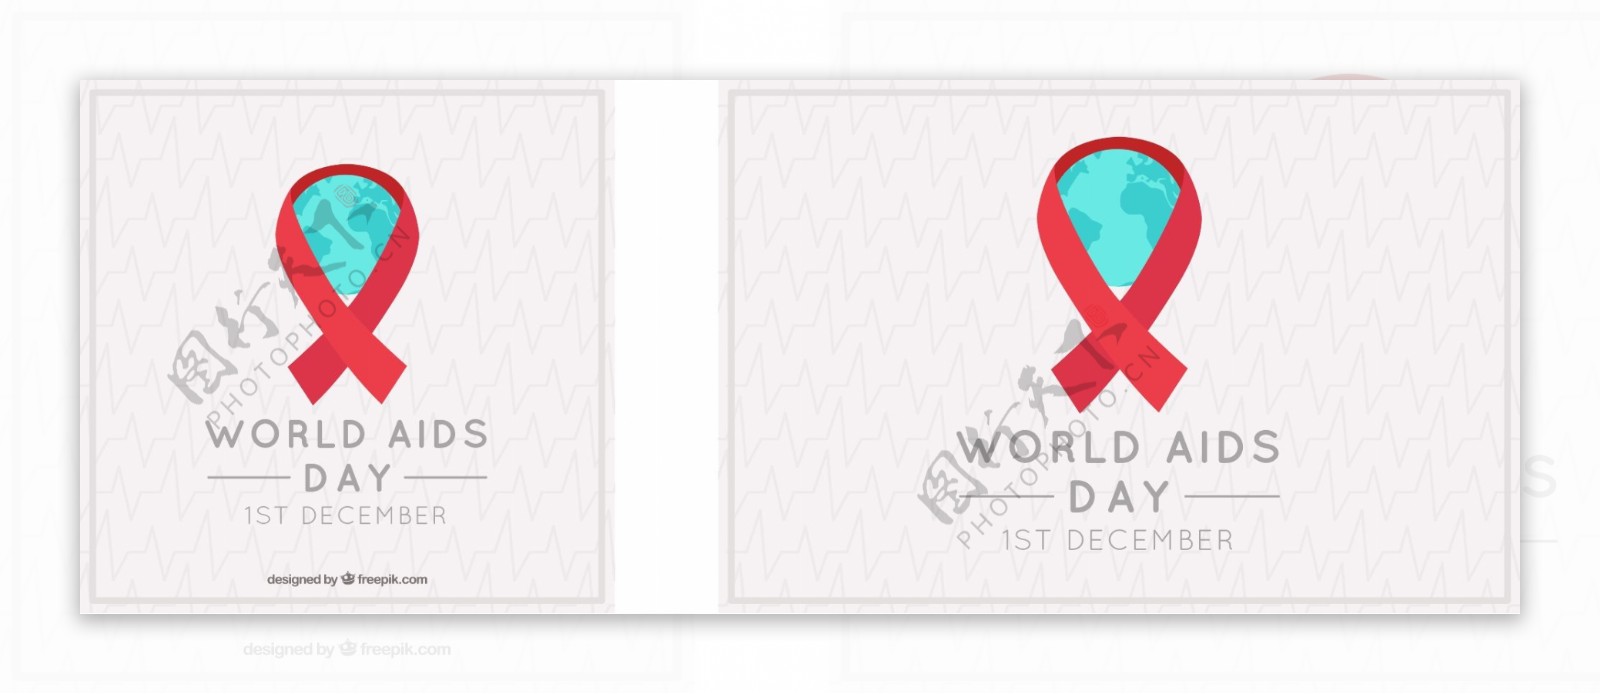 优雅的红丝带背景世界艾滋病日